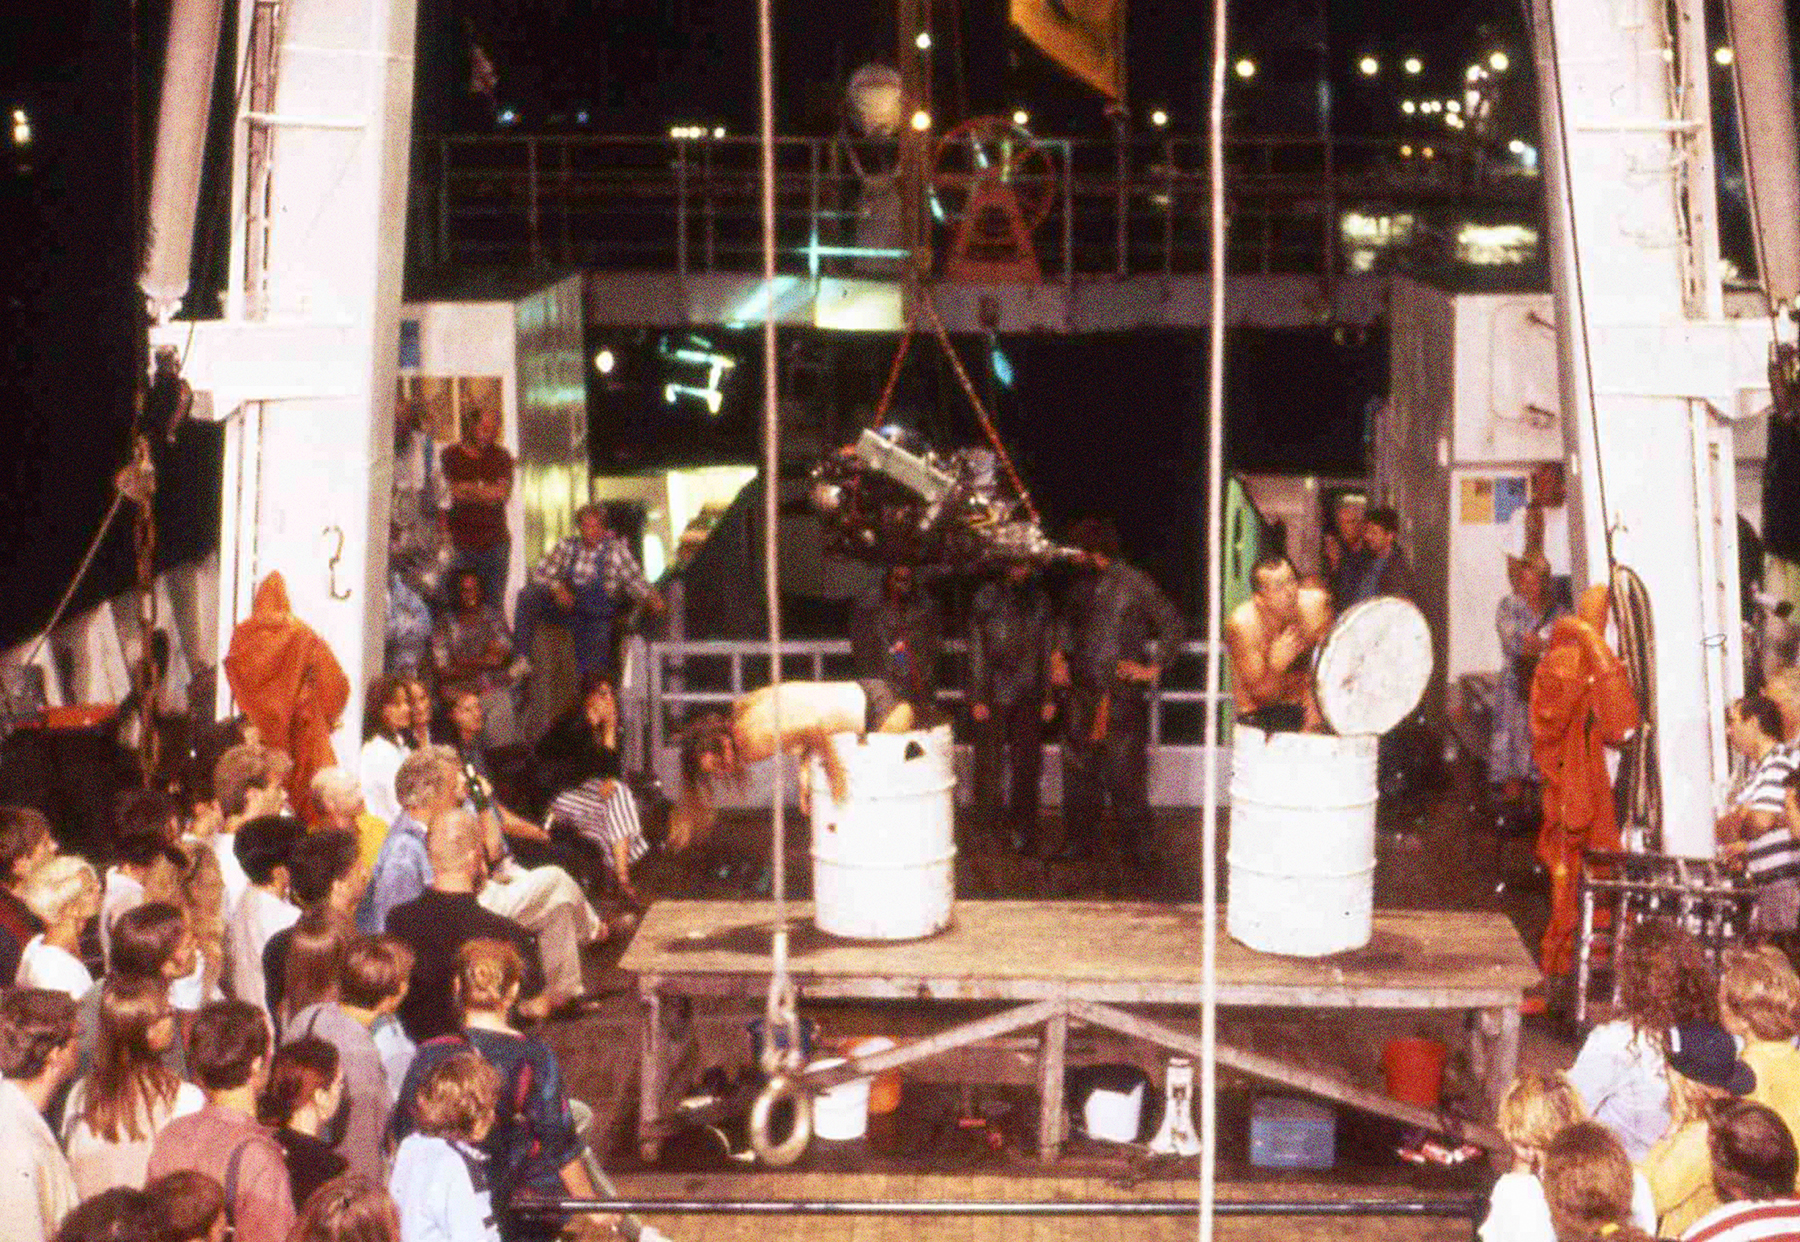 Eine Performance auf dem Achterdeck 1994 in St. Petersburg. Menschen klettern aus Metallfässern. Außenrum Zuschauer:innen.